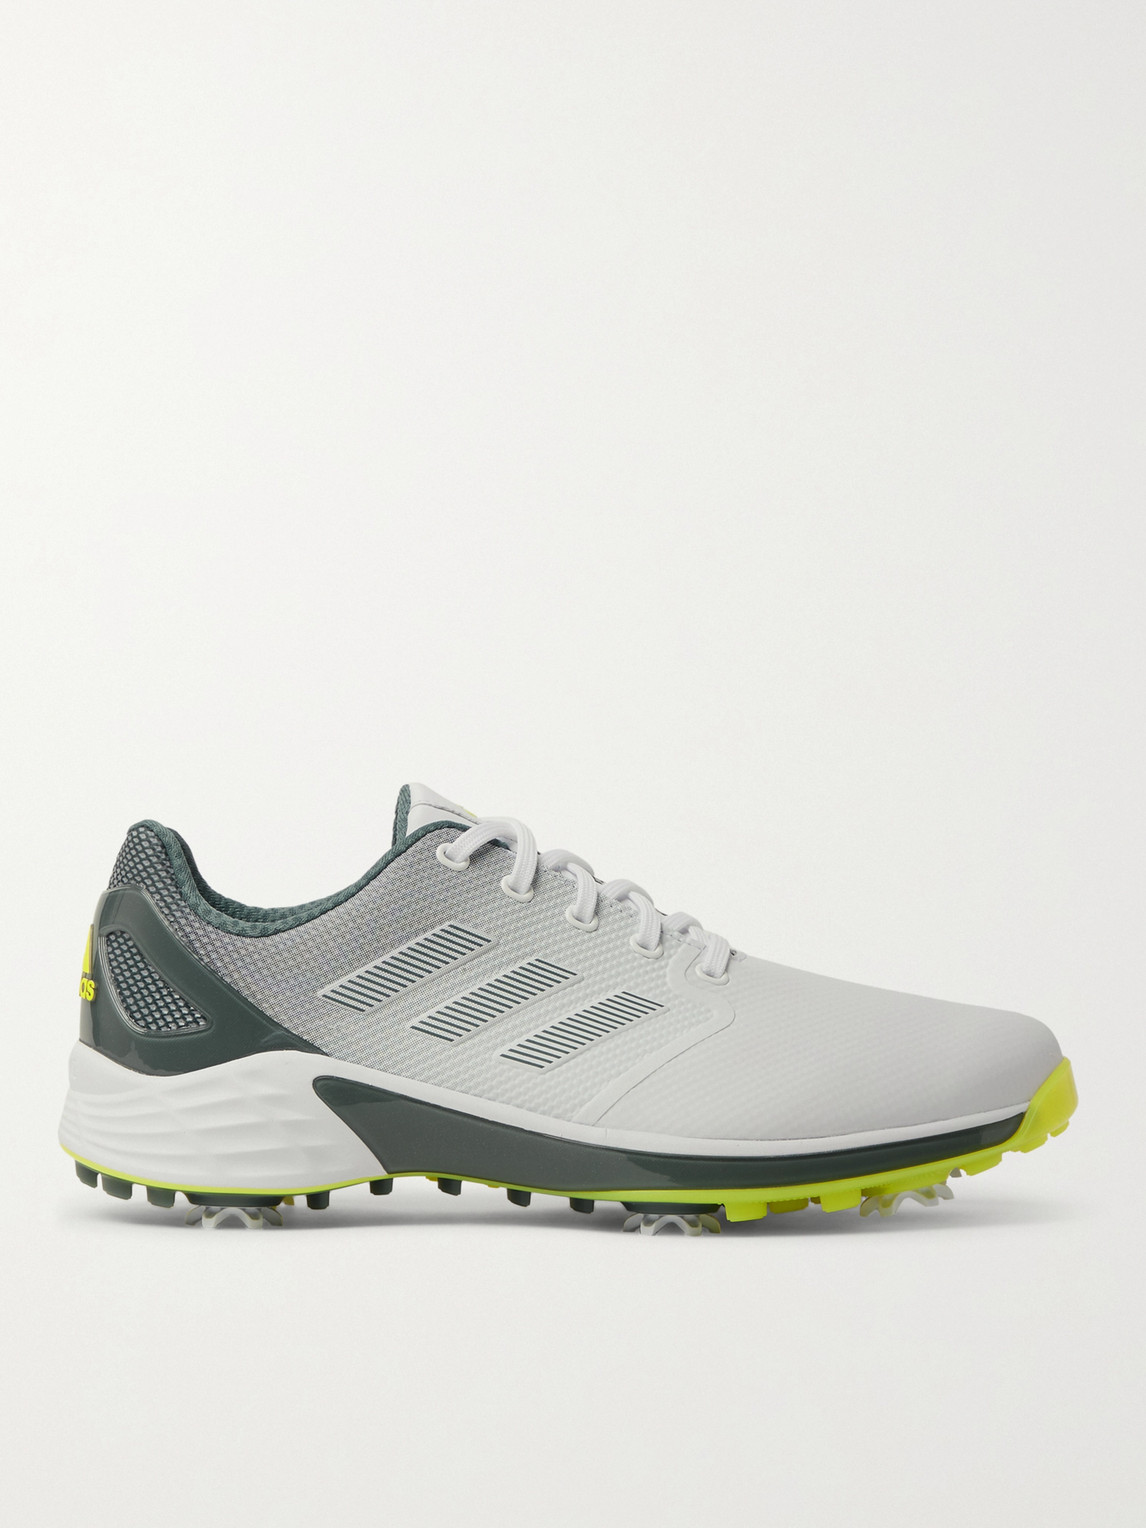 Adidas Golf Zg21 Sprintskin Golf Shoes In White